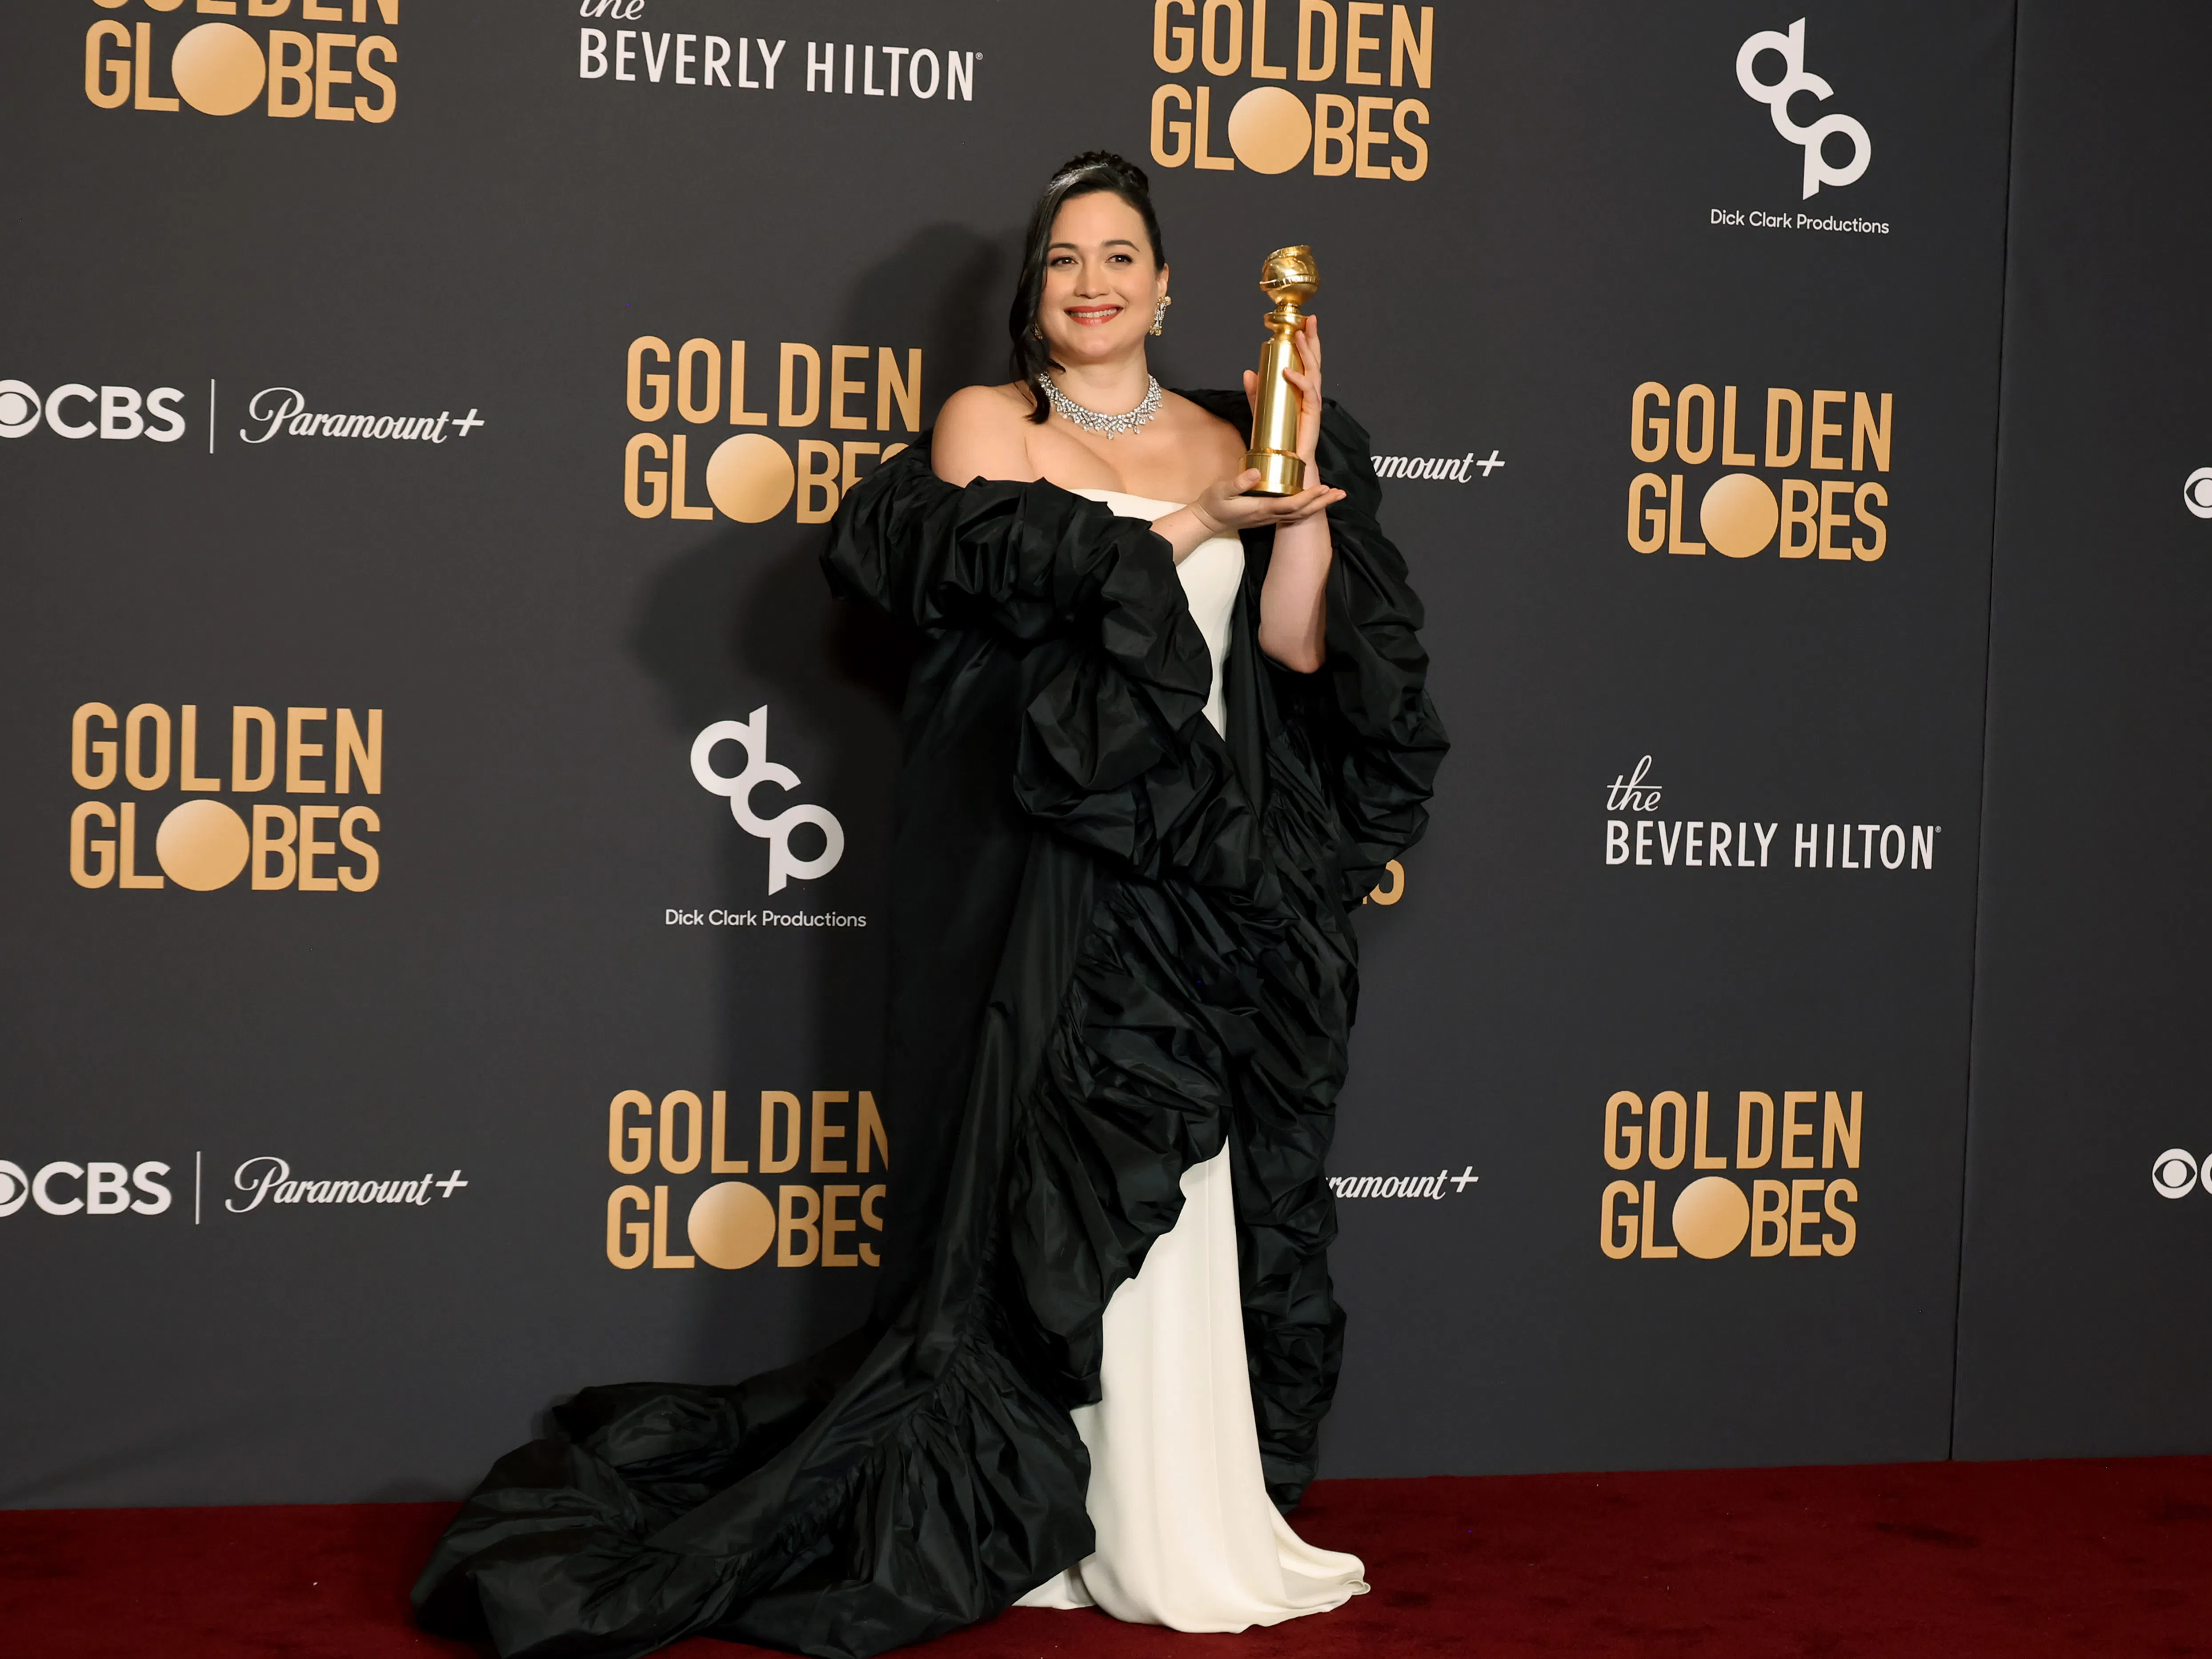 Историческа победа: Лили Гладстоун стана първата индианка, спечелила "Златен глобус" за най-добра актриса